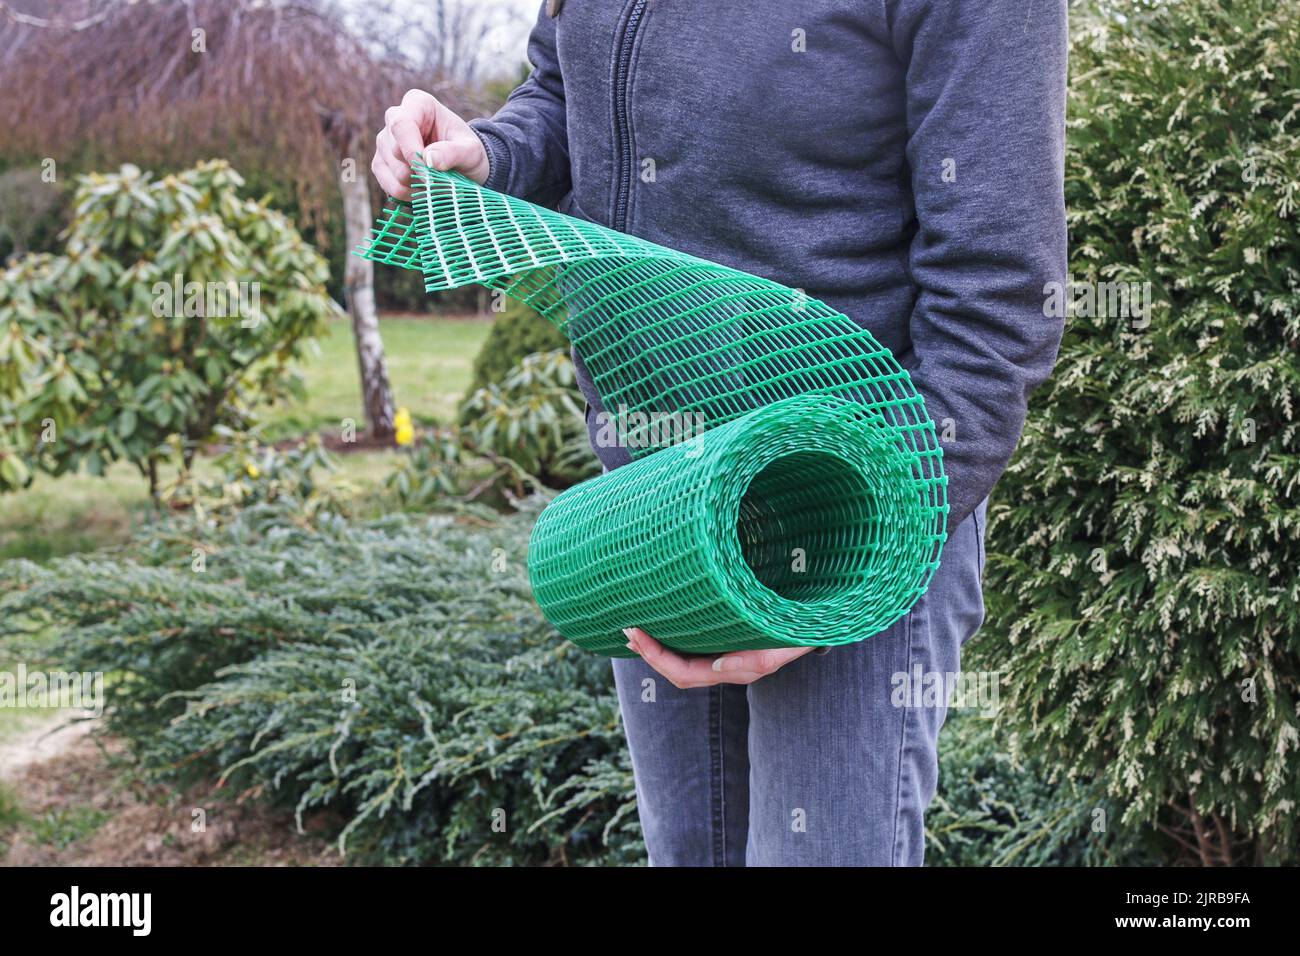 Une femme tient un filet en plastique qui est utile dans le jardinage.  Passe-temps dans le jardin Photo Stock - Alamy